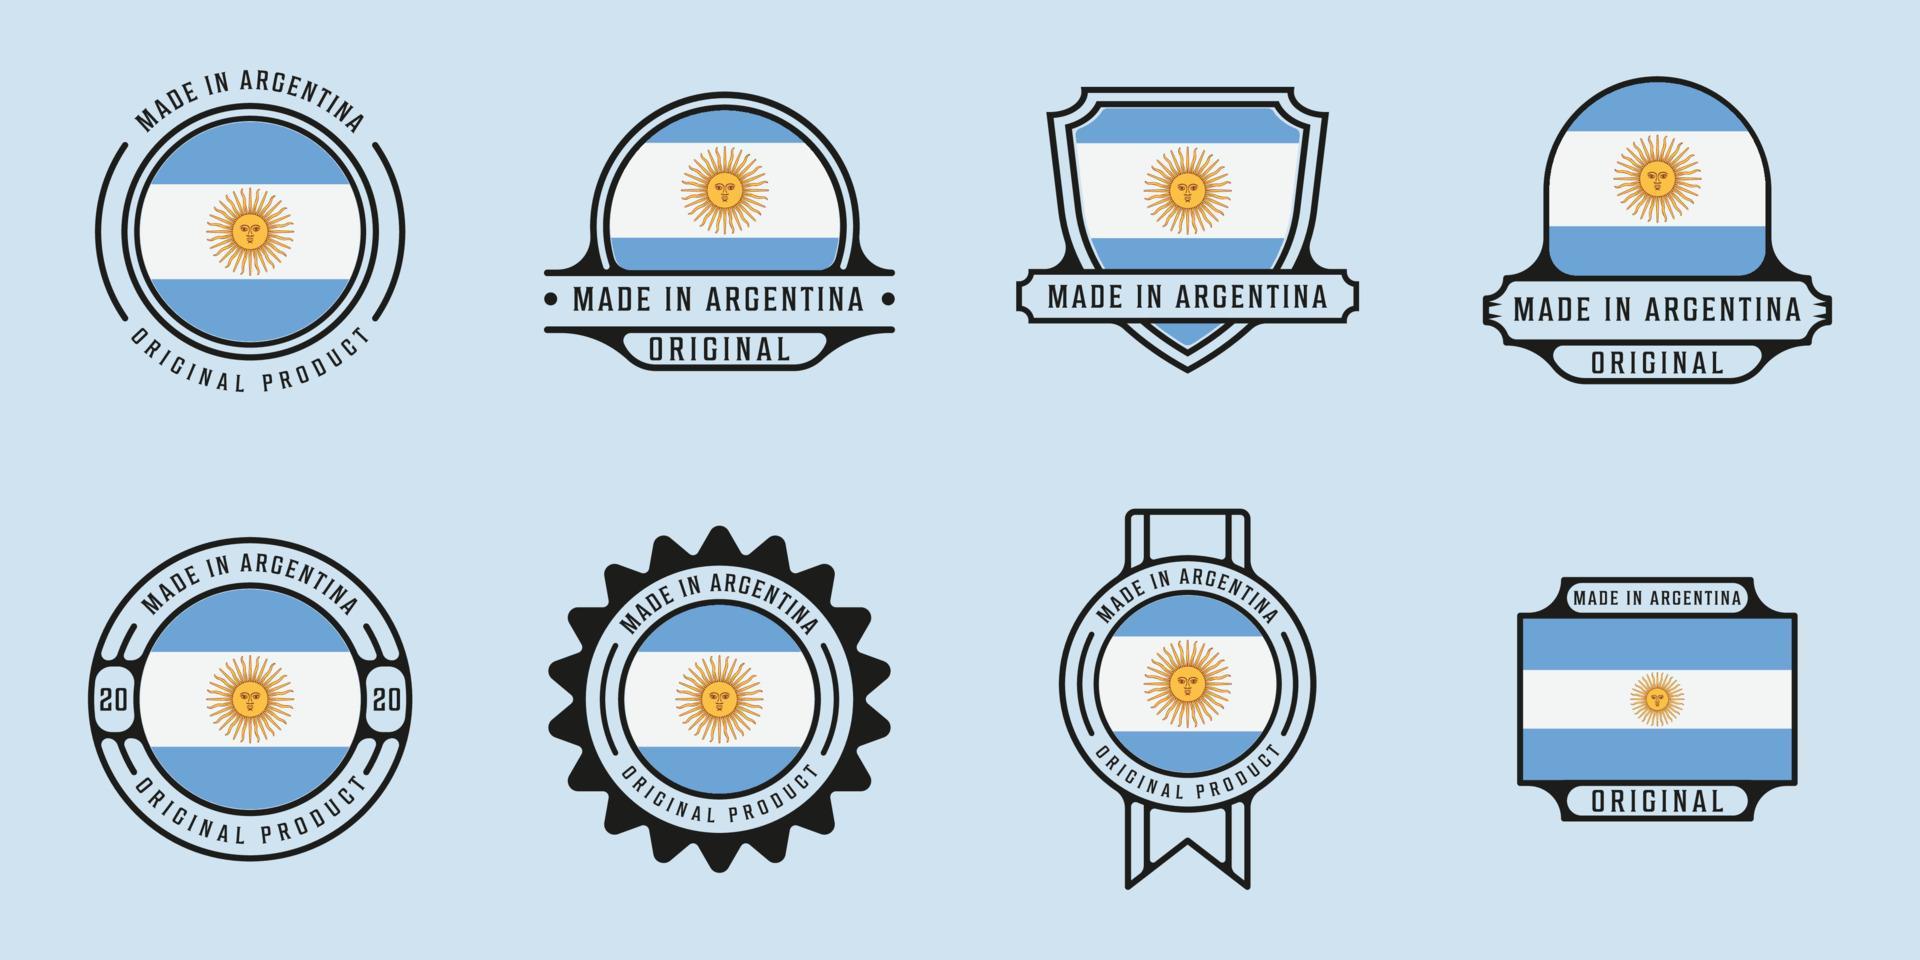 ensemble de conception graphique d'icône de modèle d'illustration vectorielle de contour de logo fabriqué en argentine. collection groupée de pays du drapeau avec divers badges et typographies pour l'exportation commerciale vecteur